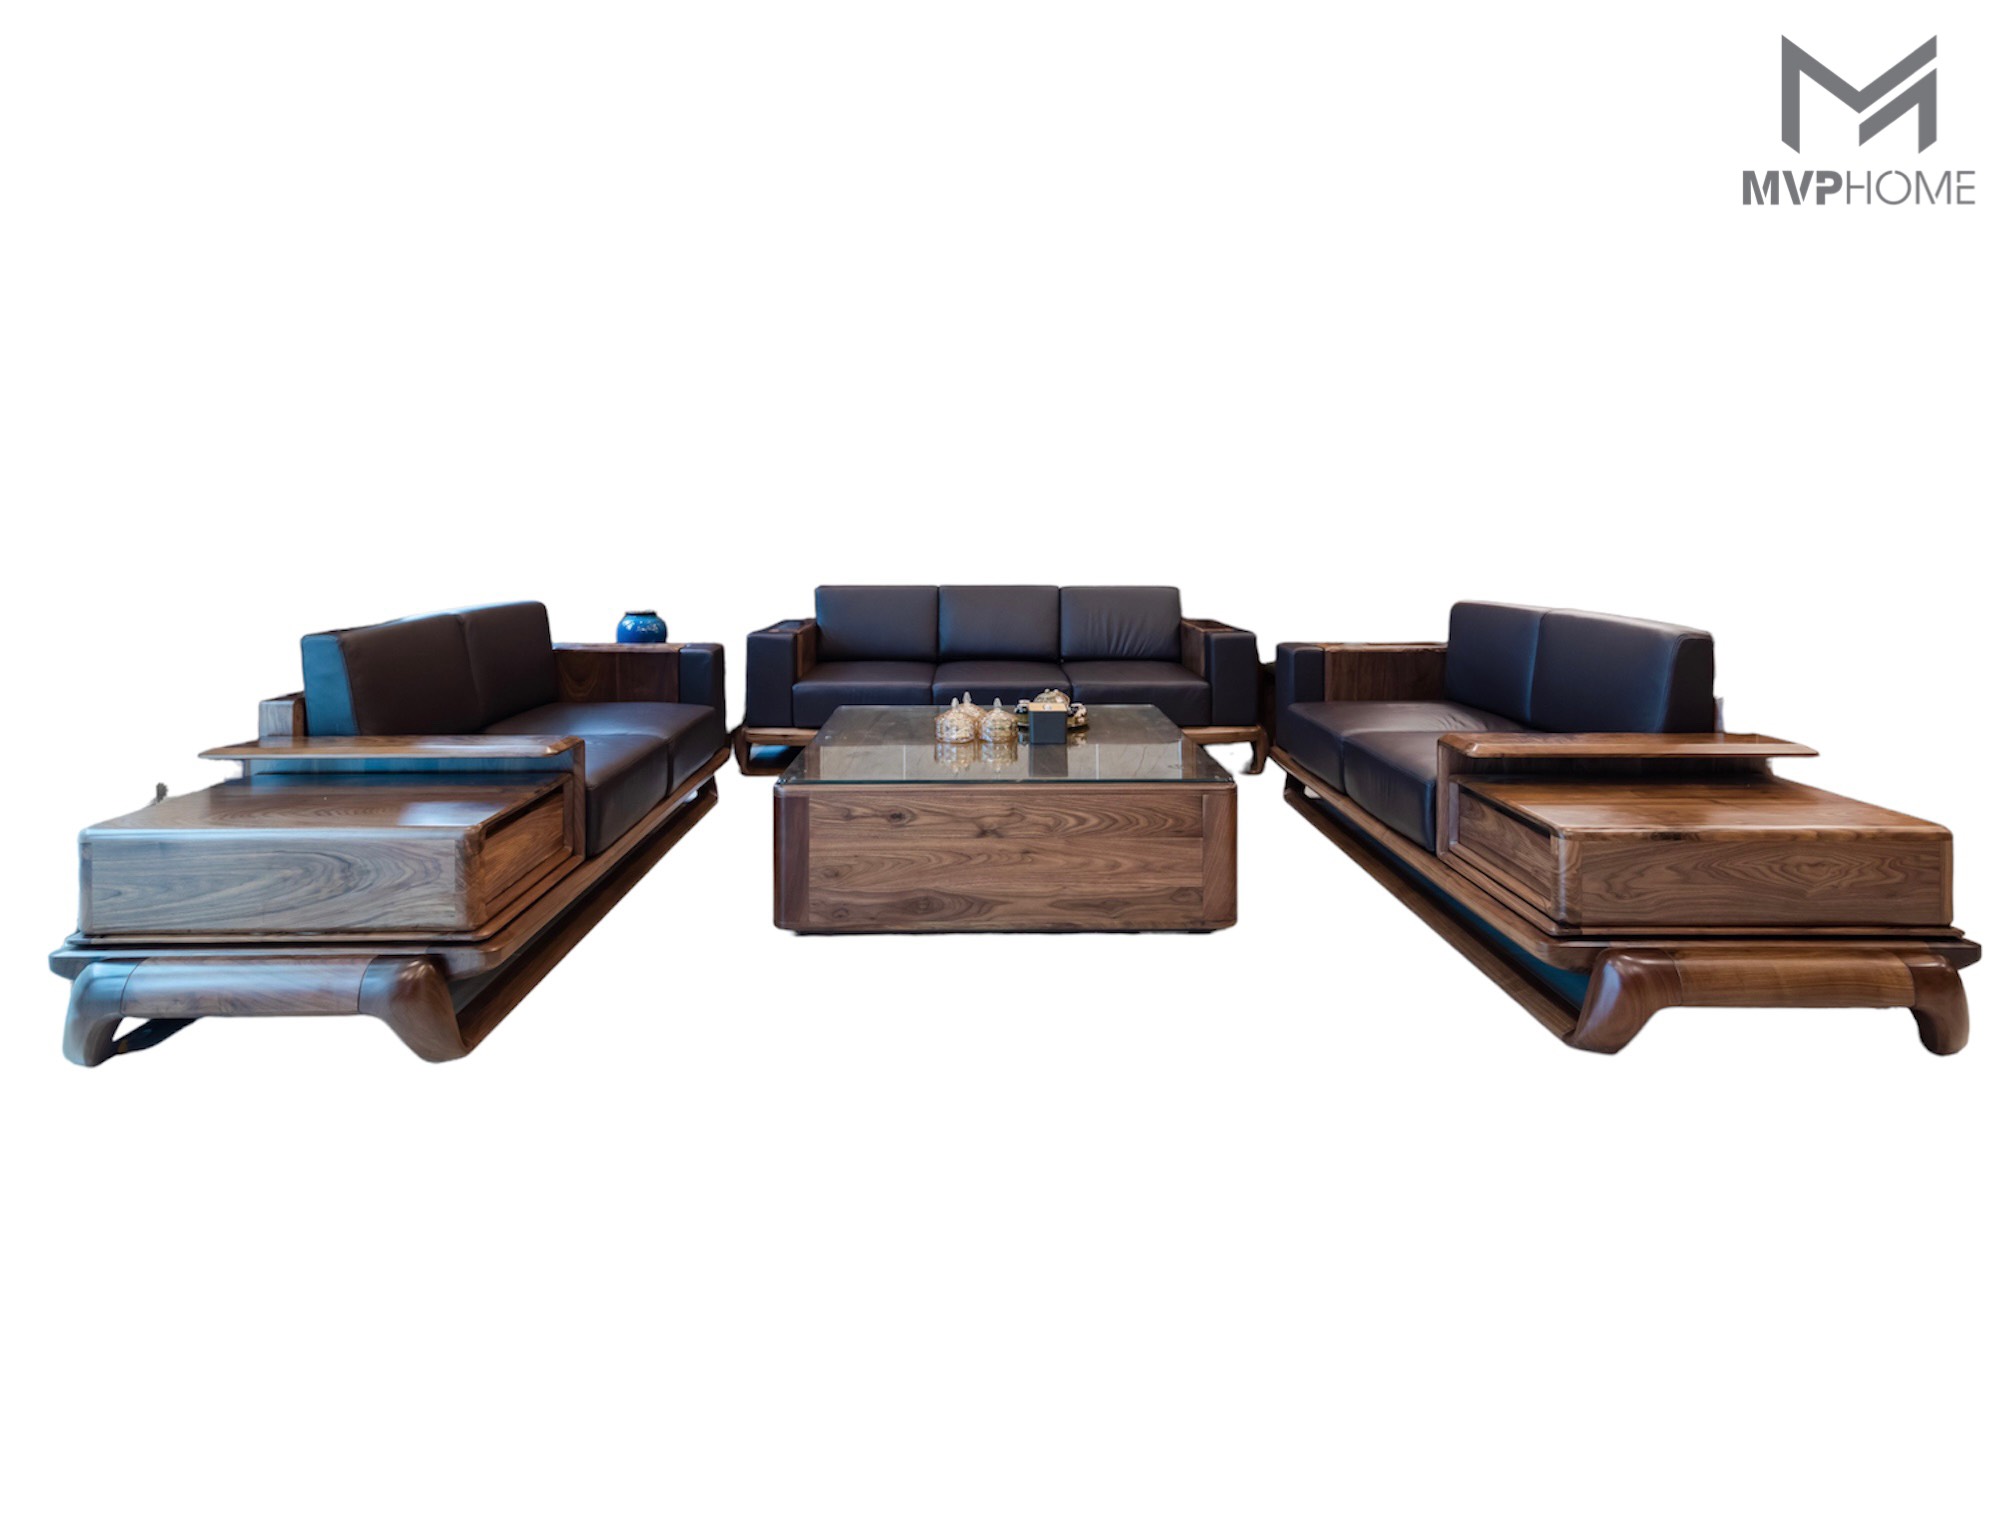 Sofa gỗ hiện đại: Sofa gỗ hiện đại là lựa chọn tuyệt vời cho bạn muốn tạo ra không gian sống thoải mái, thiết kế sáng tạo và bền vững. Với chất liệu gỗ tự nhiên được chăm sóc kỹ lưỡng, sofa này đem lại sự tự tin và sang trọng cho không gian phòng khách của bạn. Nội thất đa dạng của chúng tôi đầy đủ để bạn lựa chọn và sở hữu.